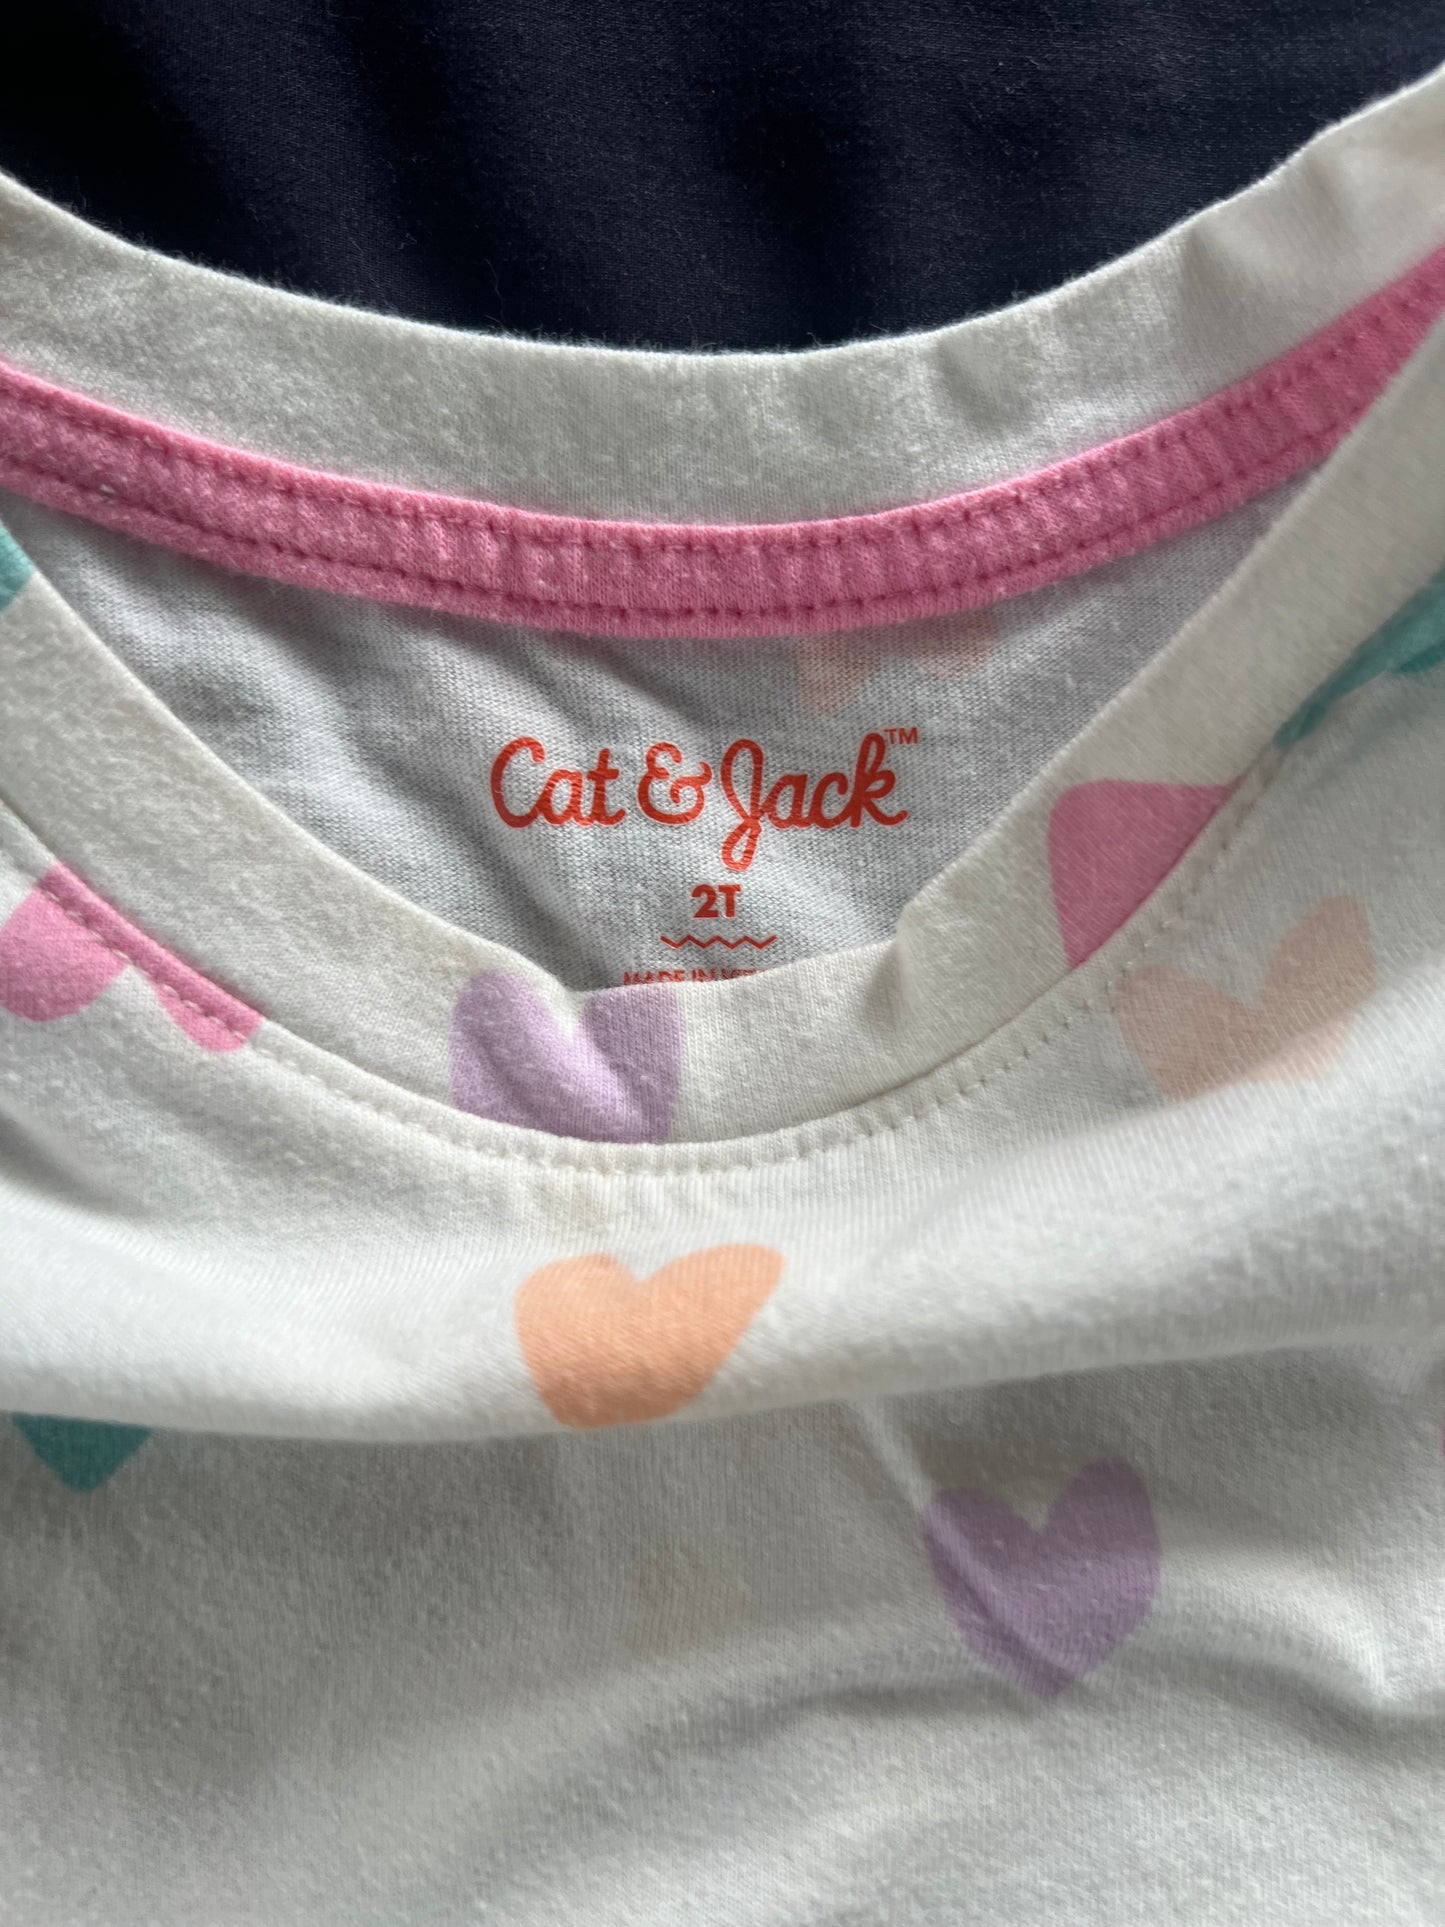 Cat & Jack Heart Shirt 2T